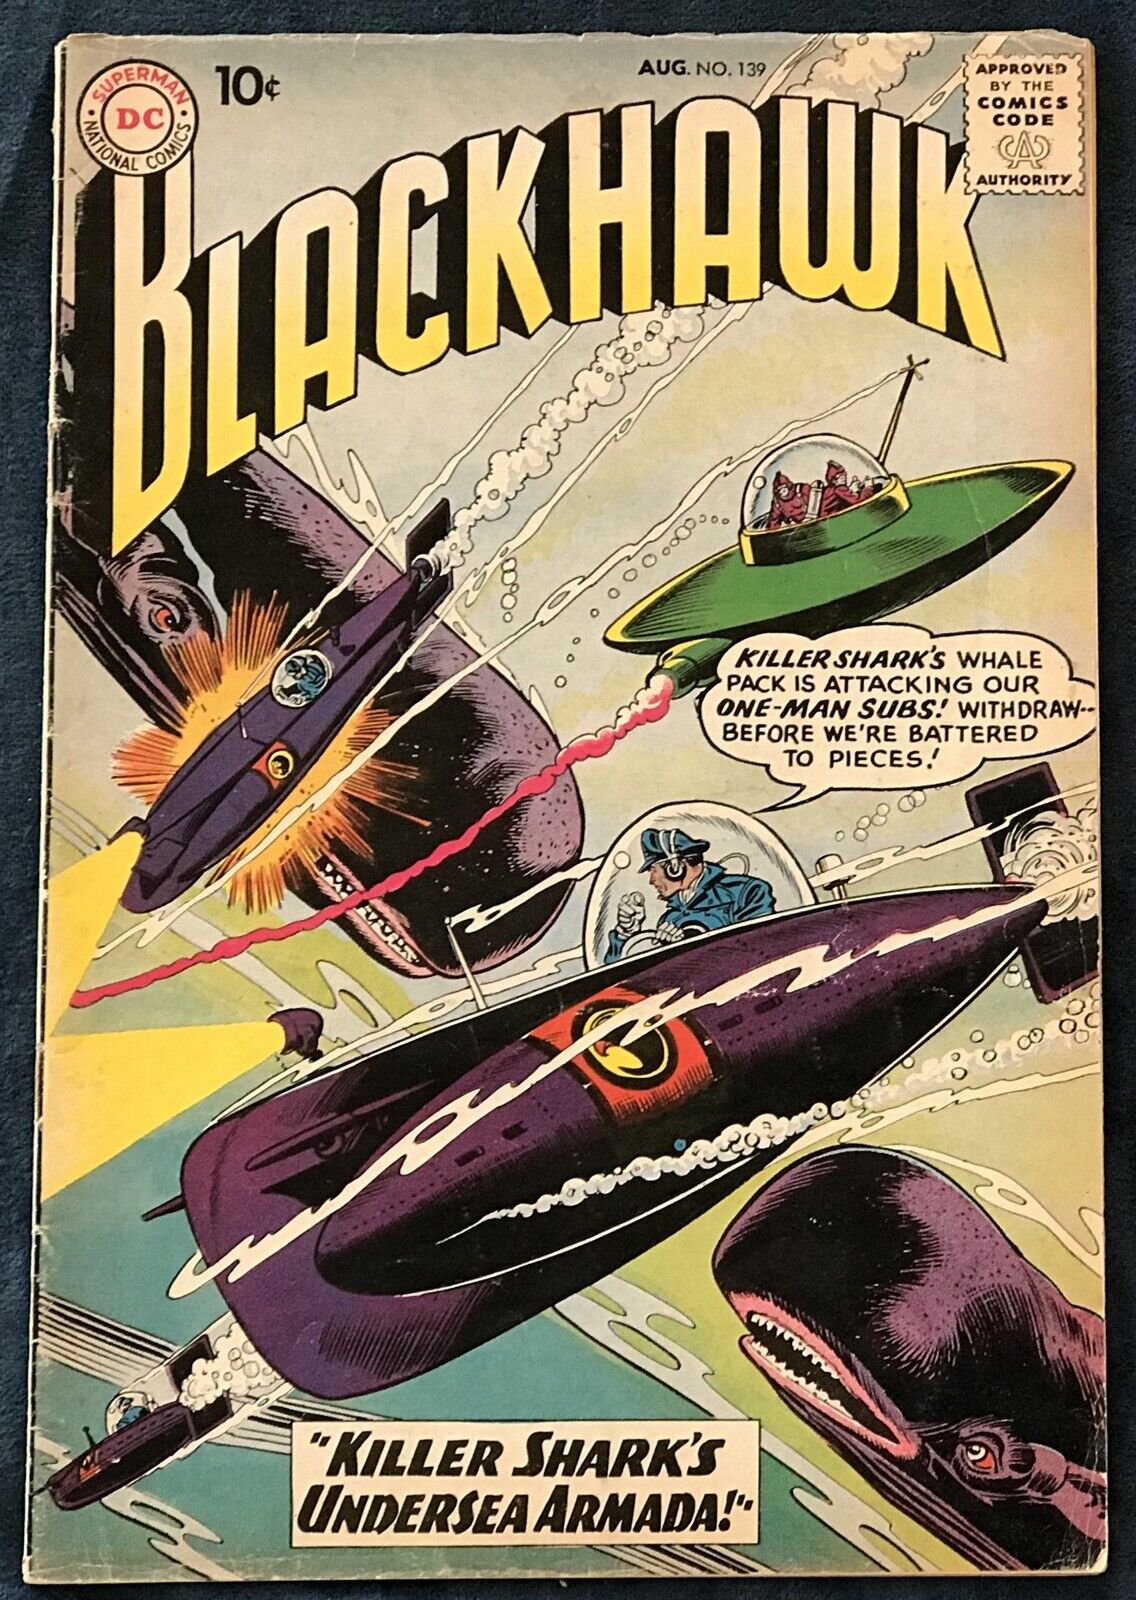 Blackhawk #139  Aug 1959  Killer Shark